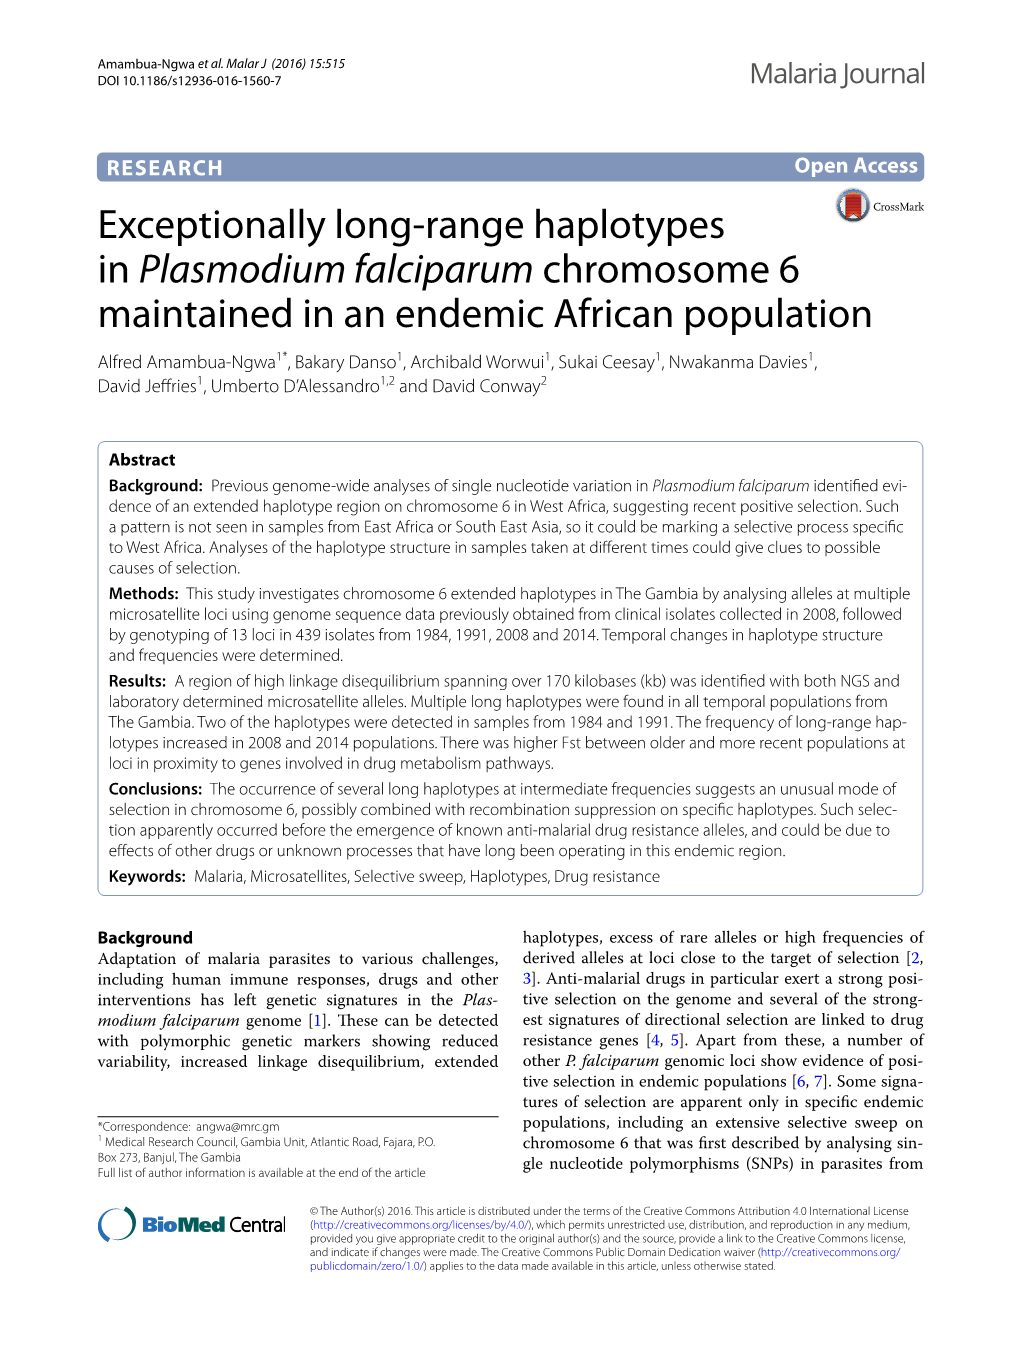 Exceptionally Long-Range Haplotypes in Plasmodium Falciparum